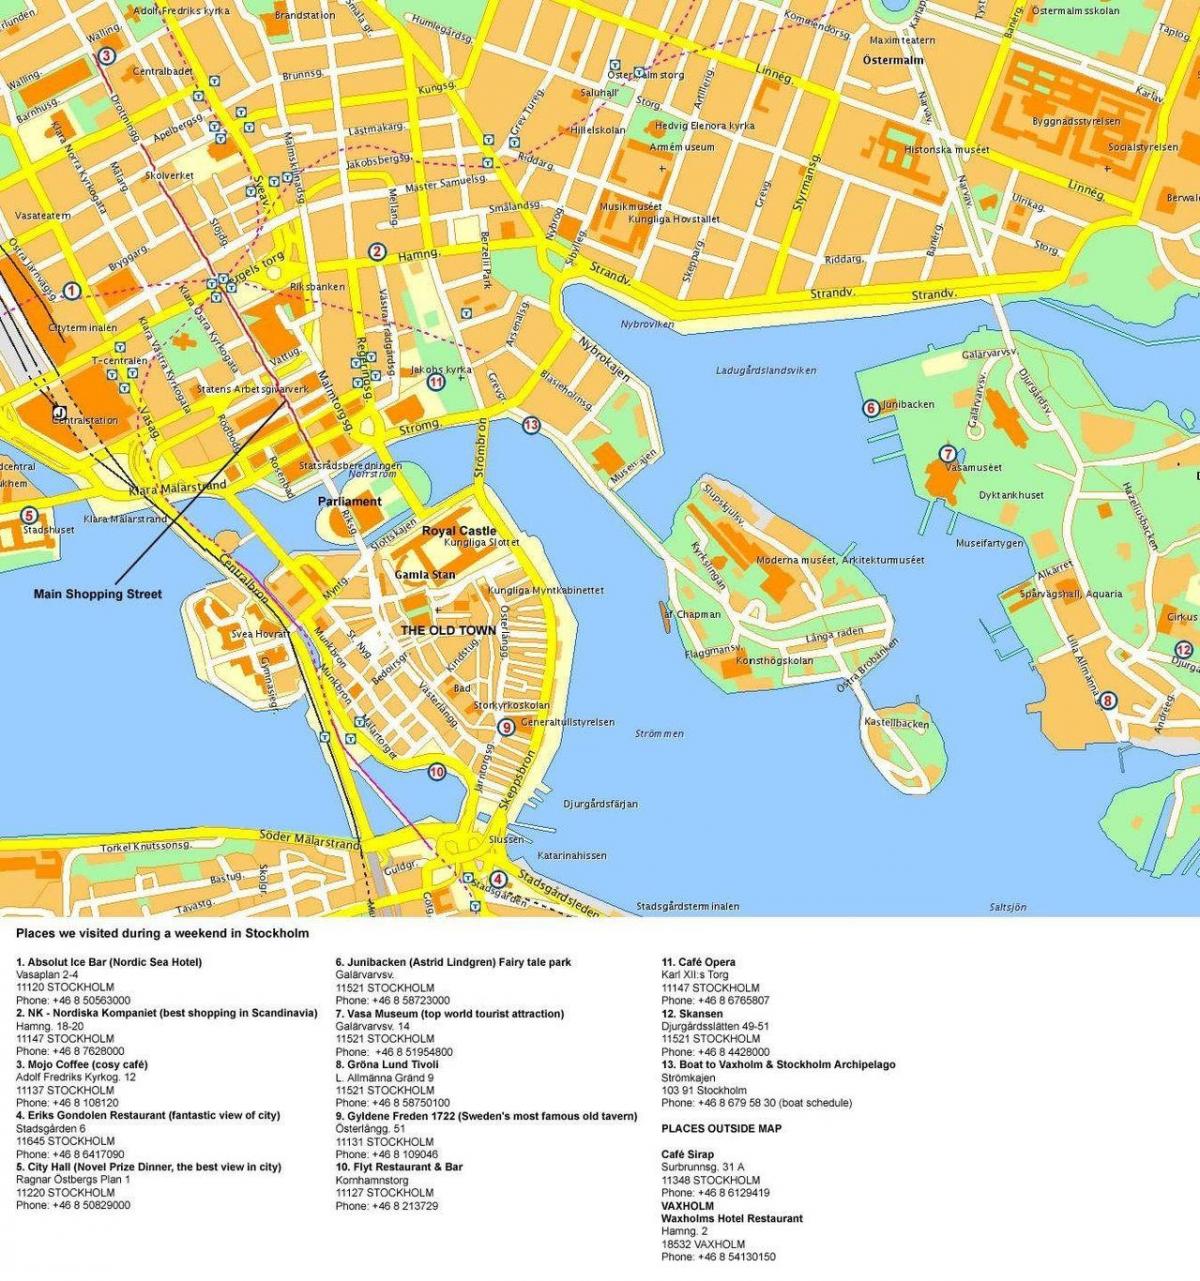 지도 스톡홀름의 크루즈 터미널